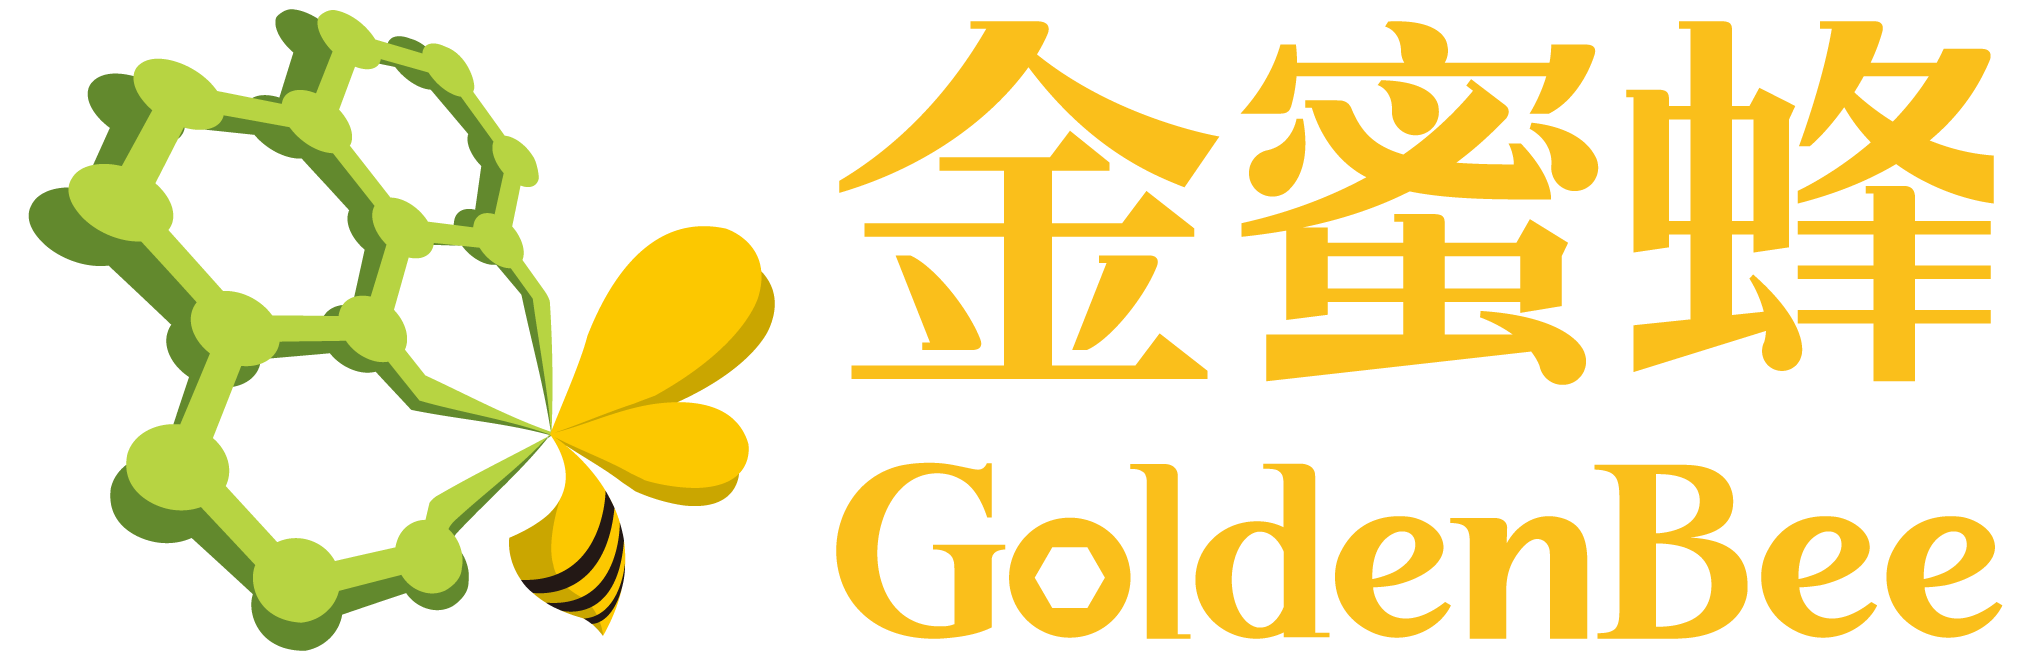 GoldenBee network logo.png